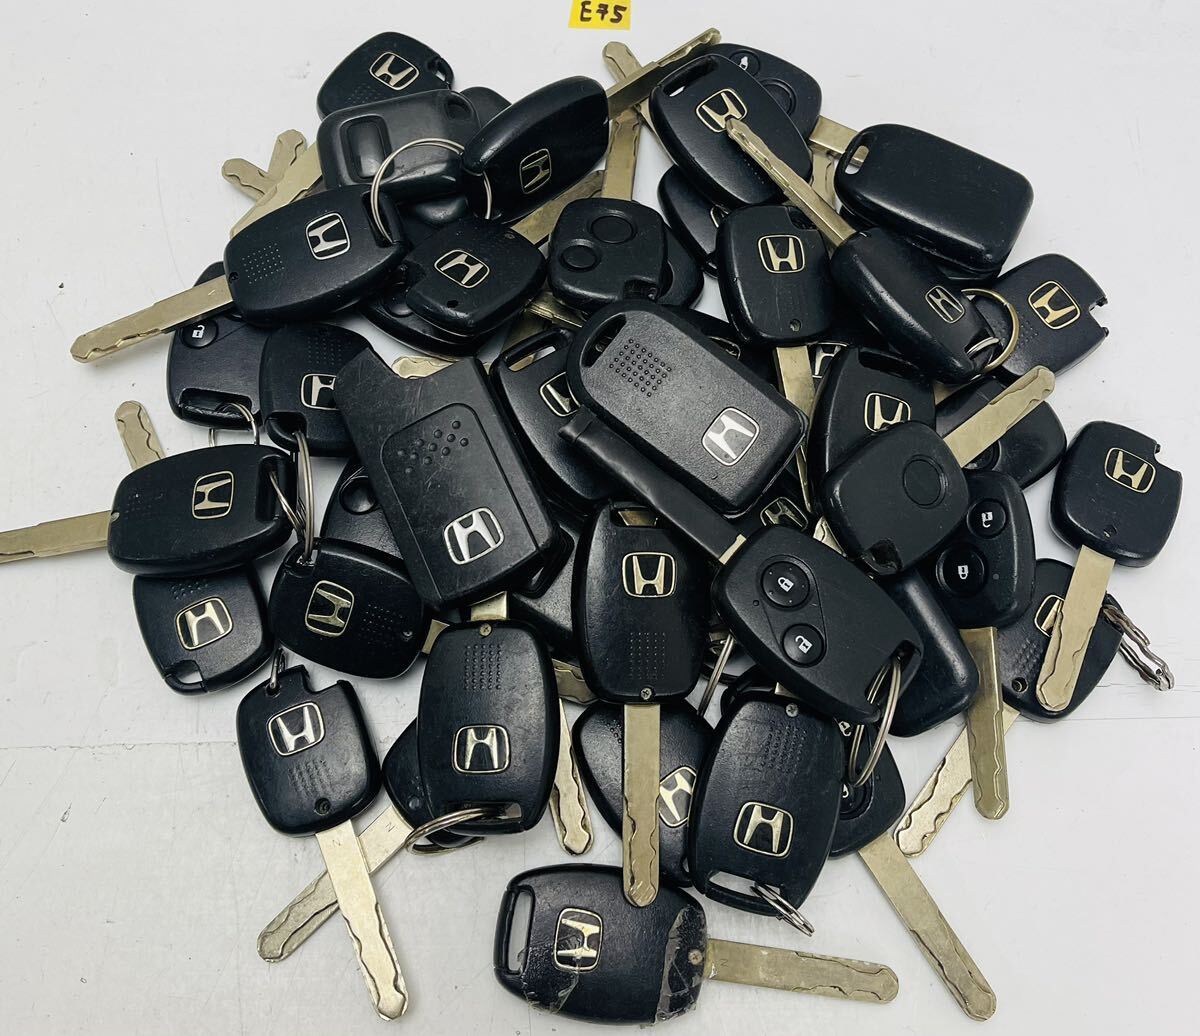  бесплатная доставка Honda оригинальный "умный" ключ дистанционный ключ совместно 50 шт. комплект (E75)